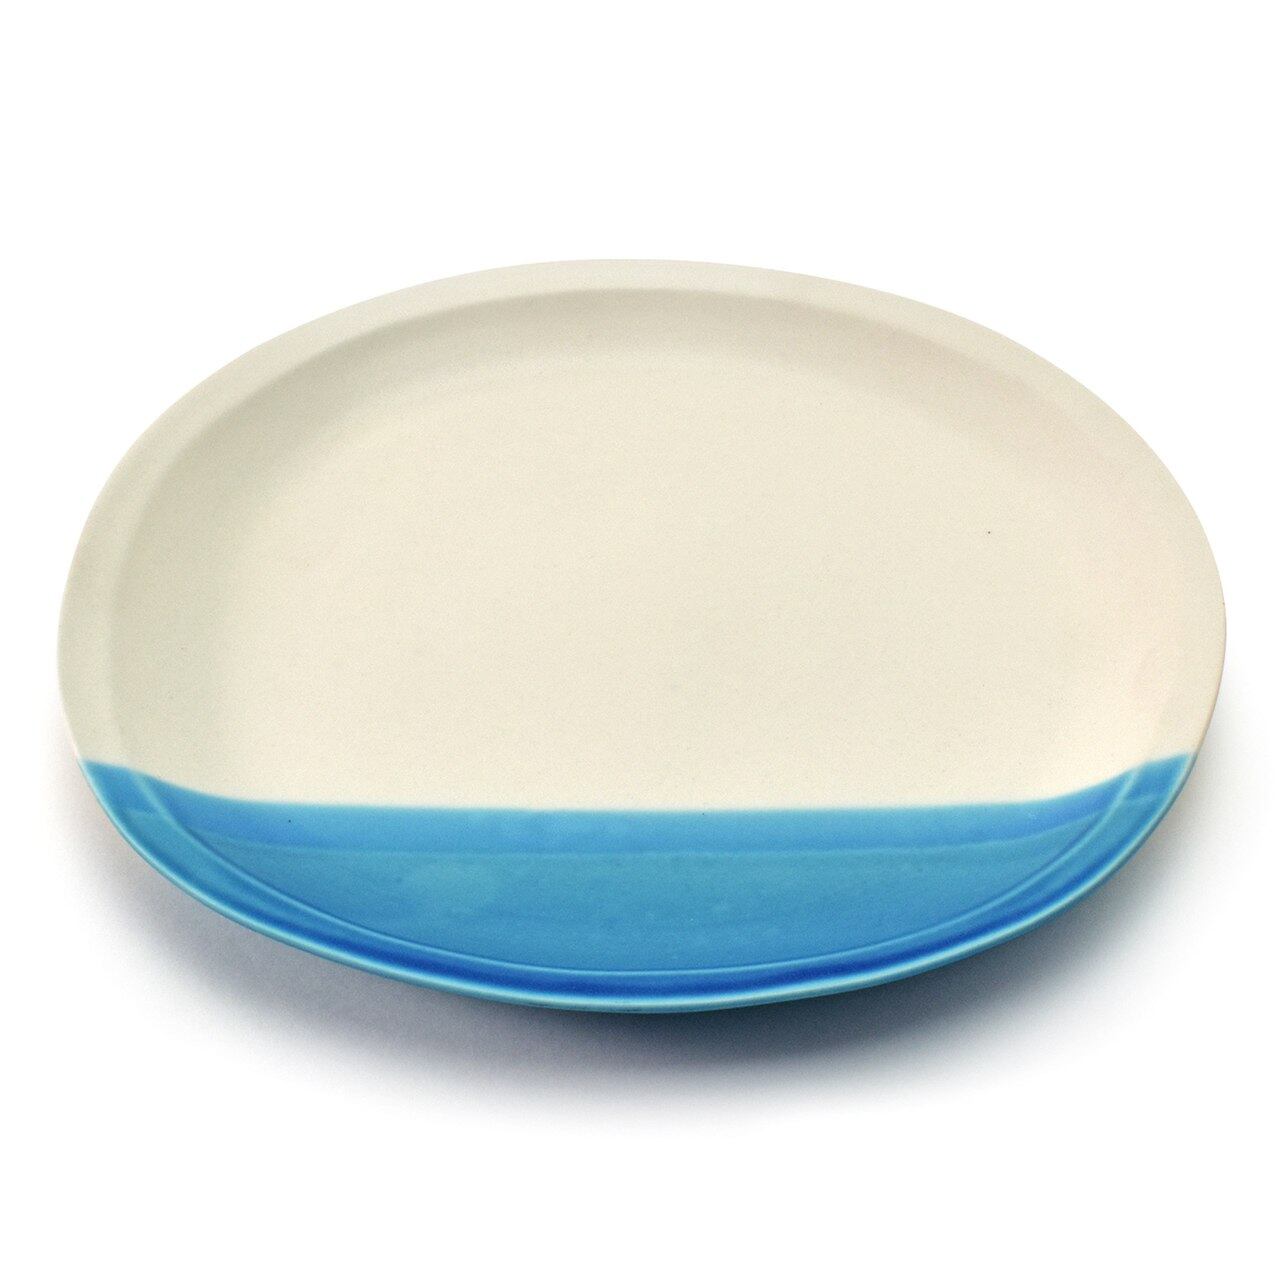 aito製作所 「 水明 suimei 」 オーバル プレート 皿 パスタ皿 約24×21cm 雲 ライトブルー 美濃焼 288525